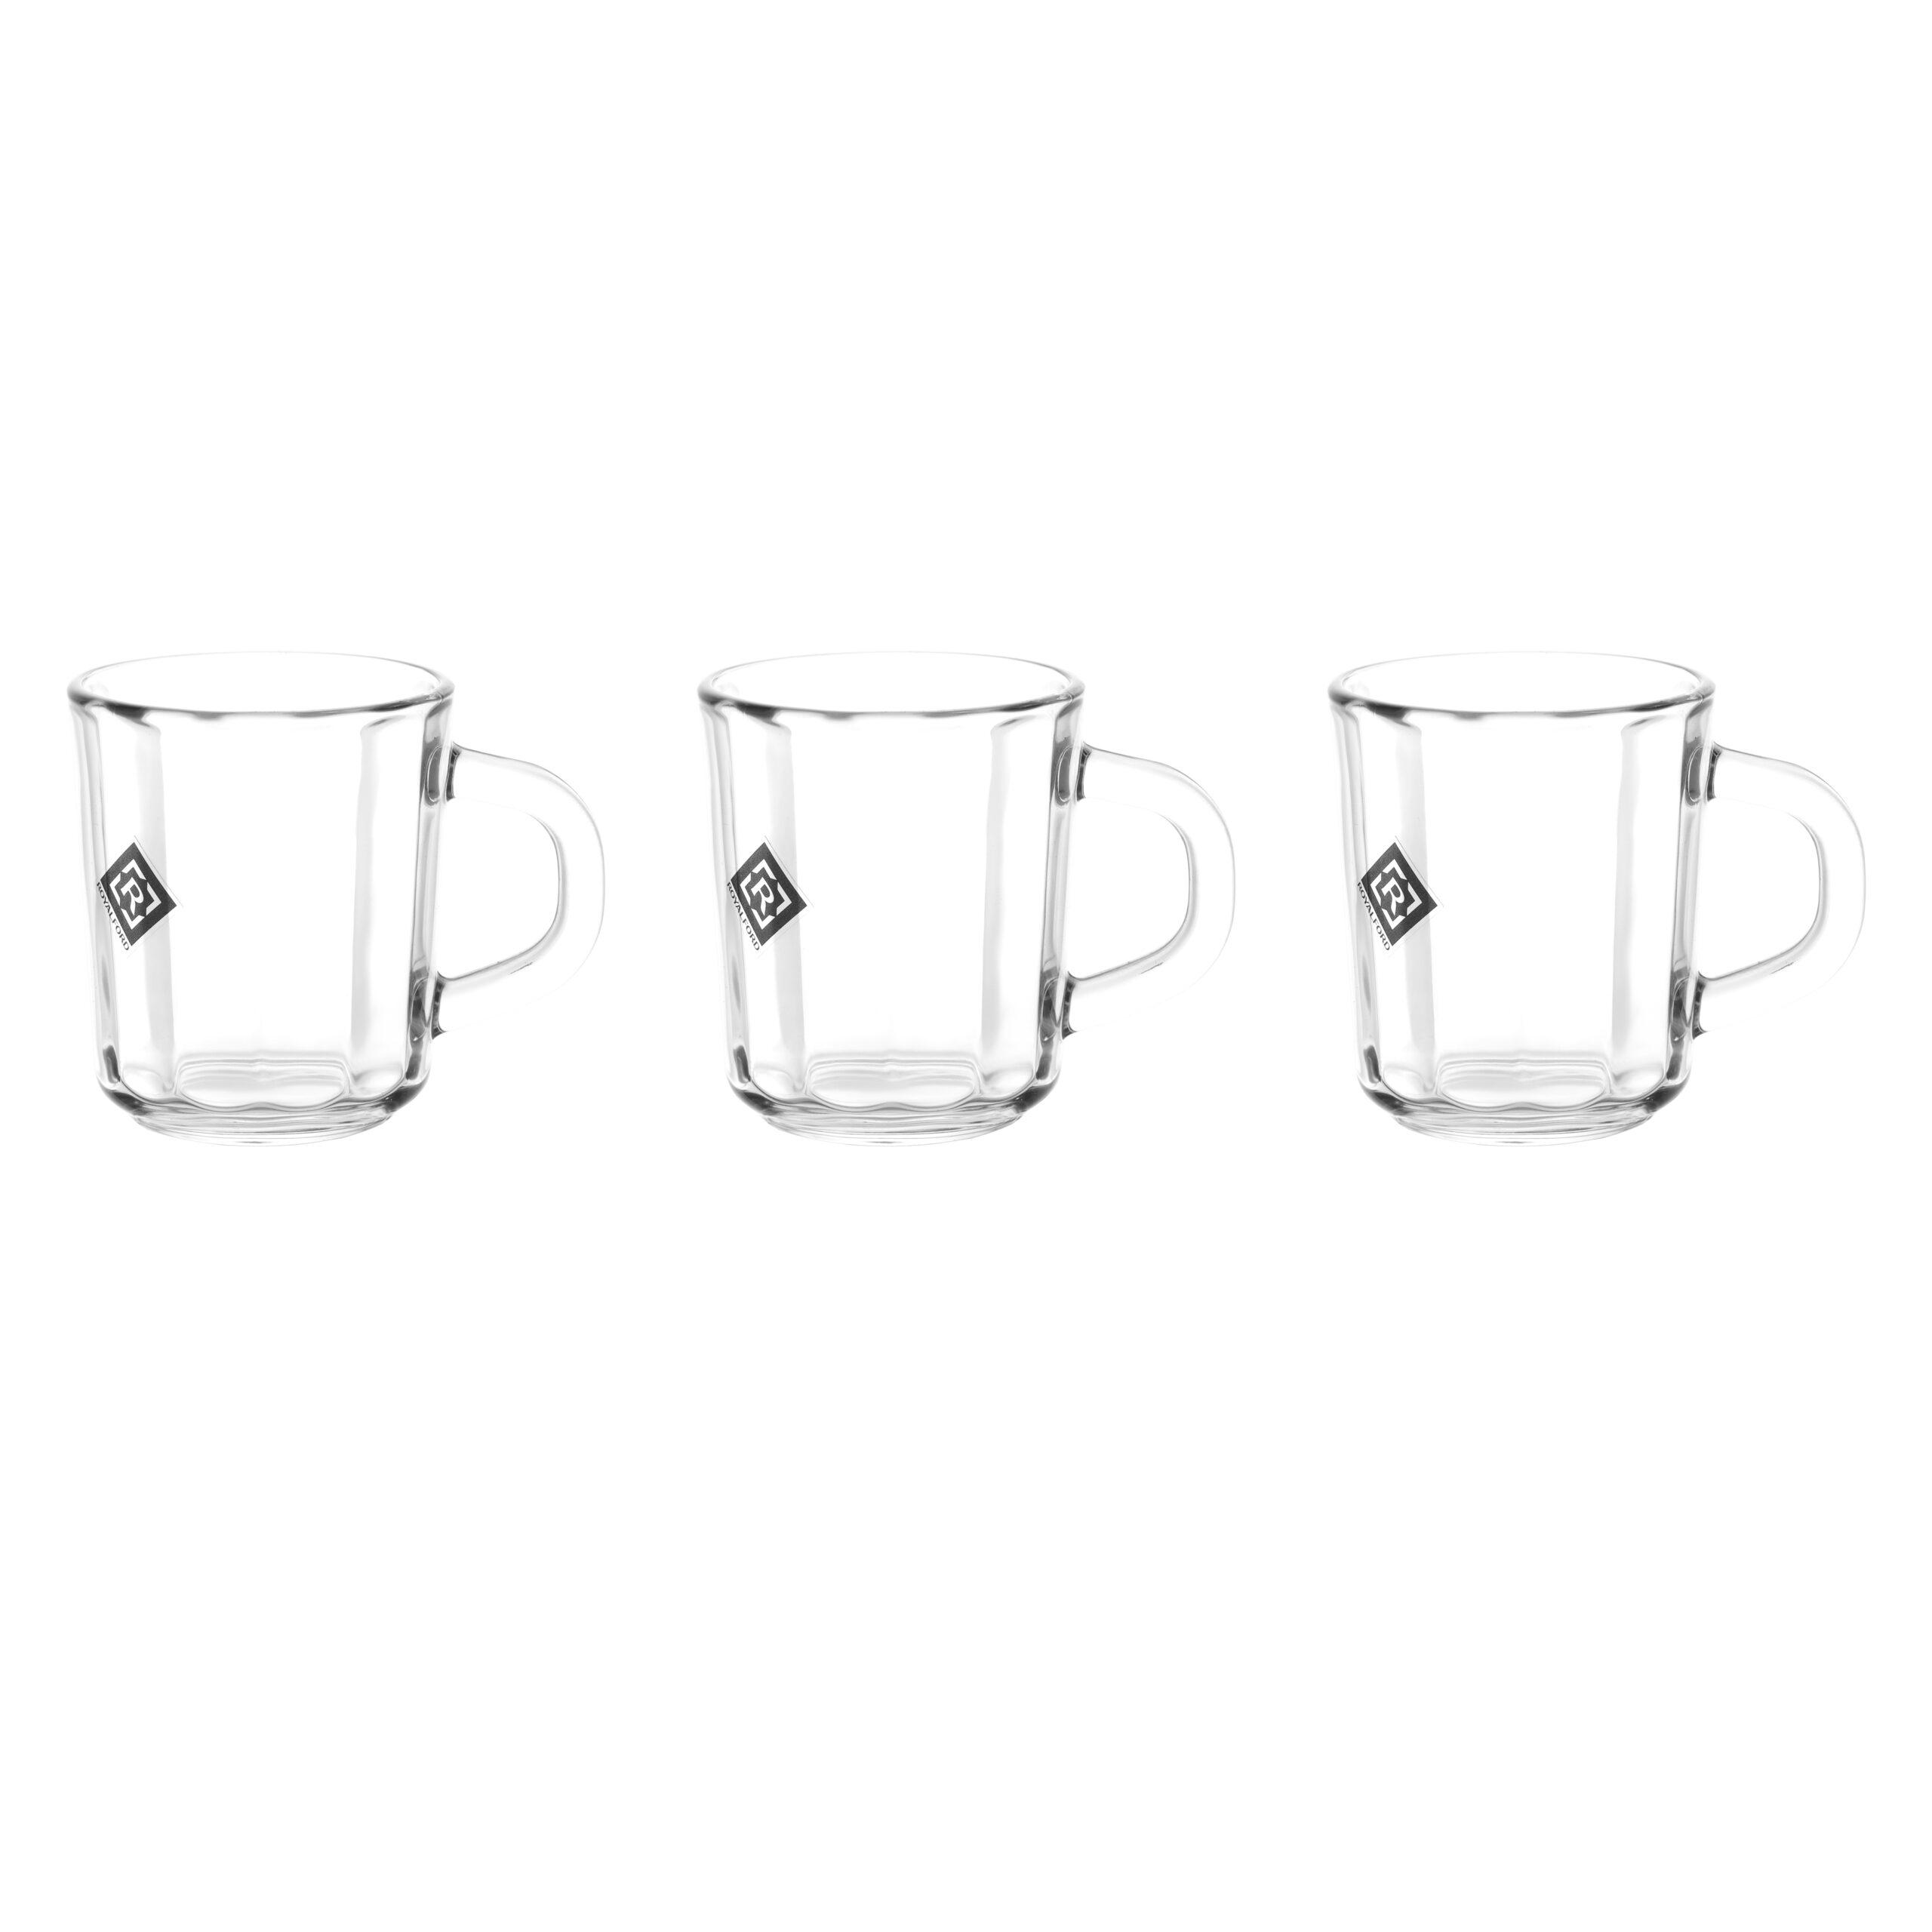 أكواب زجاجية عدد 3 سعة 235 مل ( 8 أونصة) Royalford - 3 Pcs Glass Mug Set With Handle, 235ml/8oz